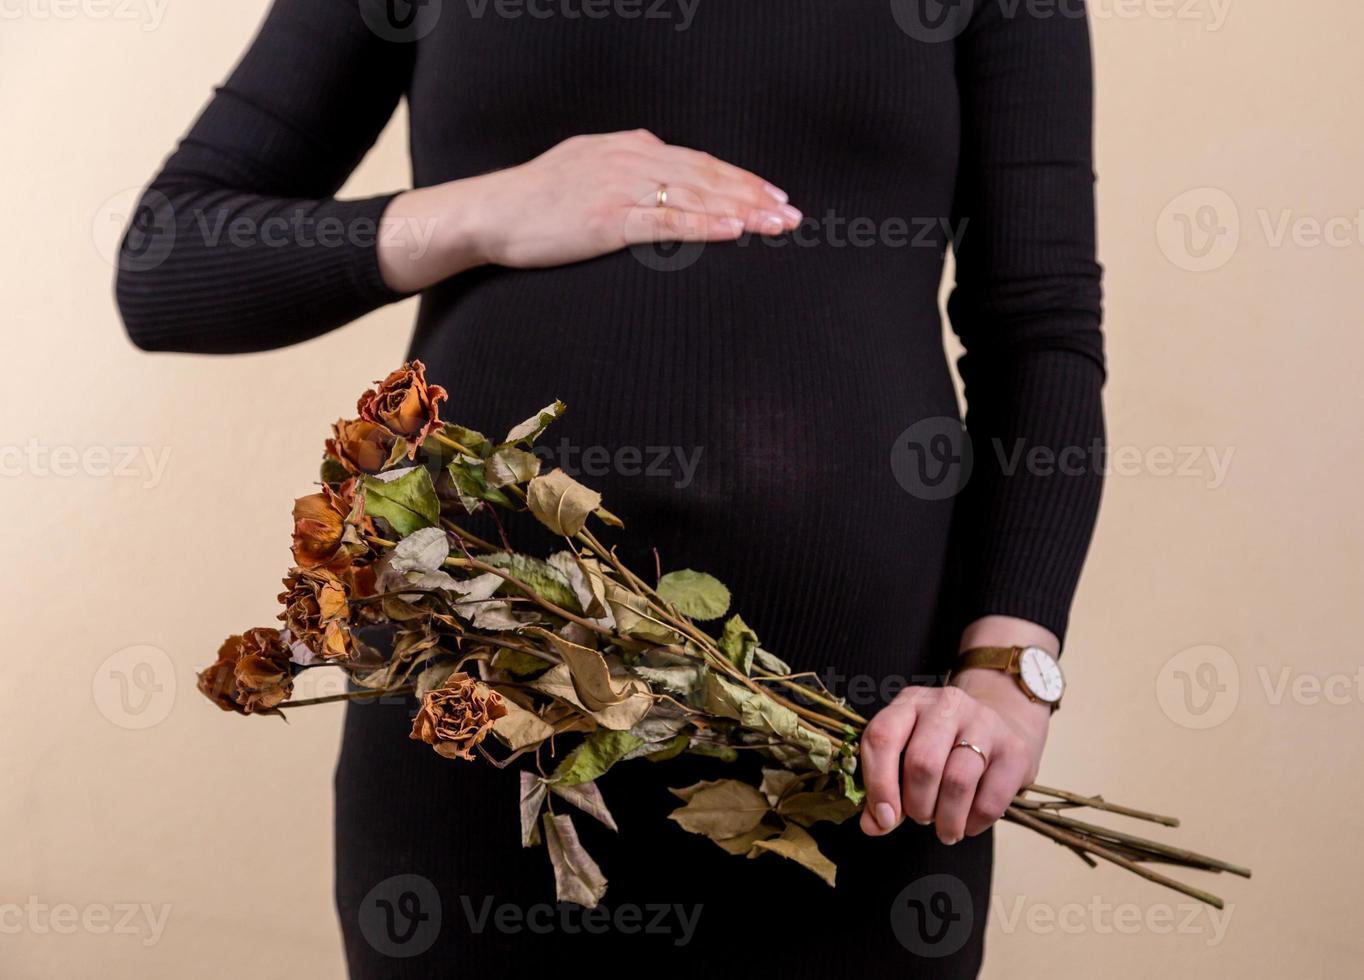 vista lateral de uma atraente mulher grávida acariciando sua barriga e segurando um buquê de rosas secas foto